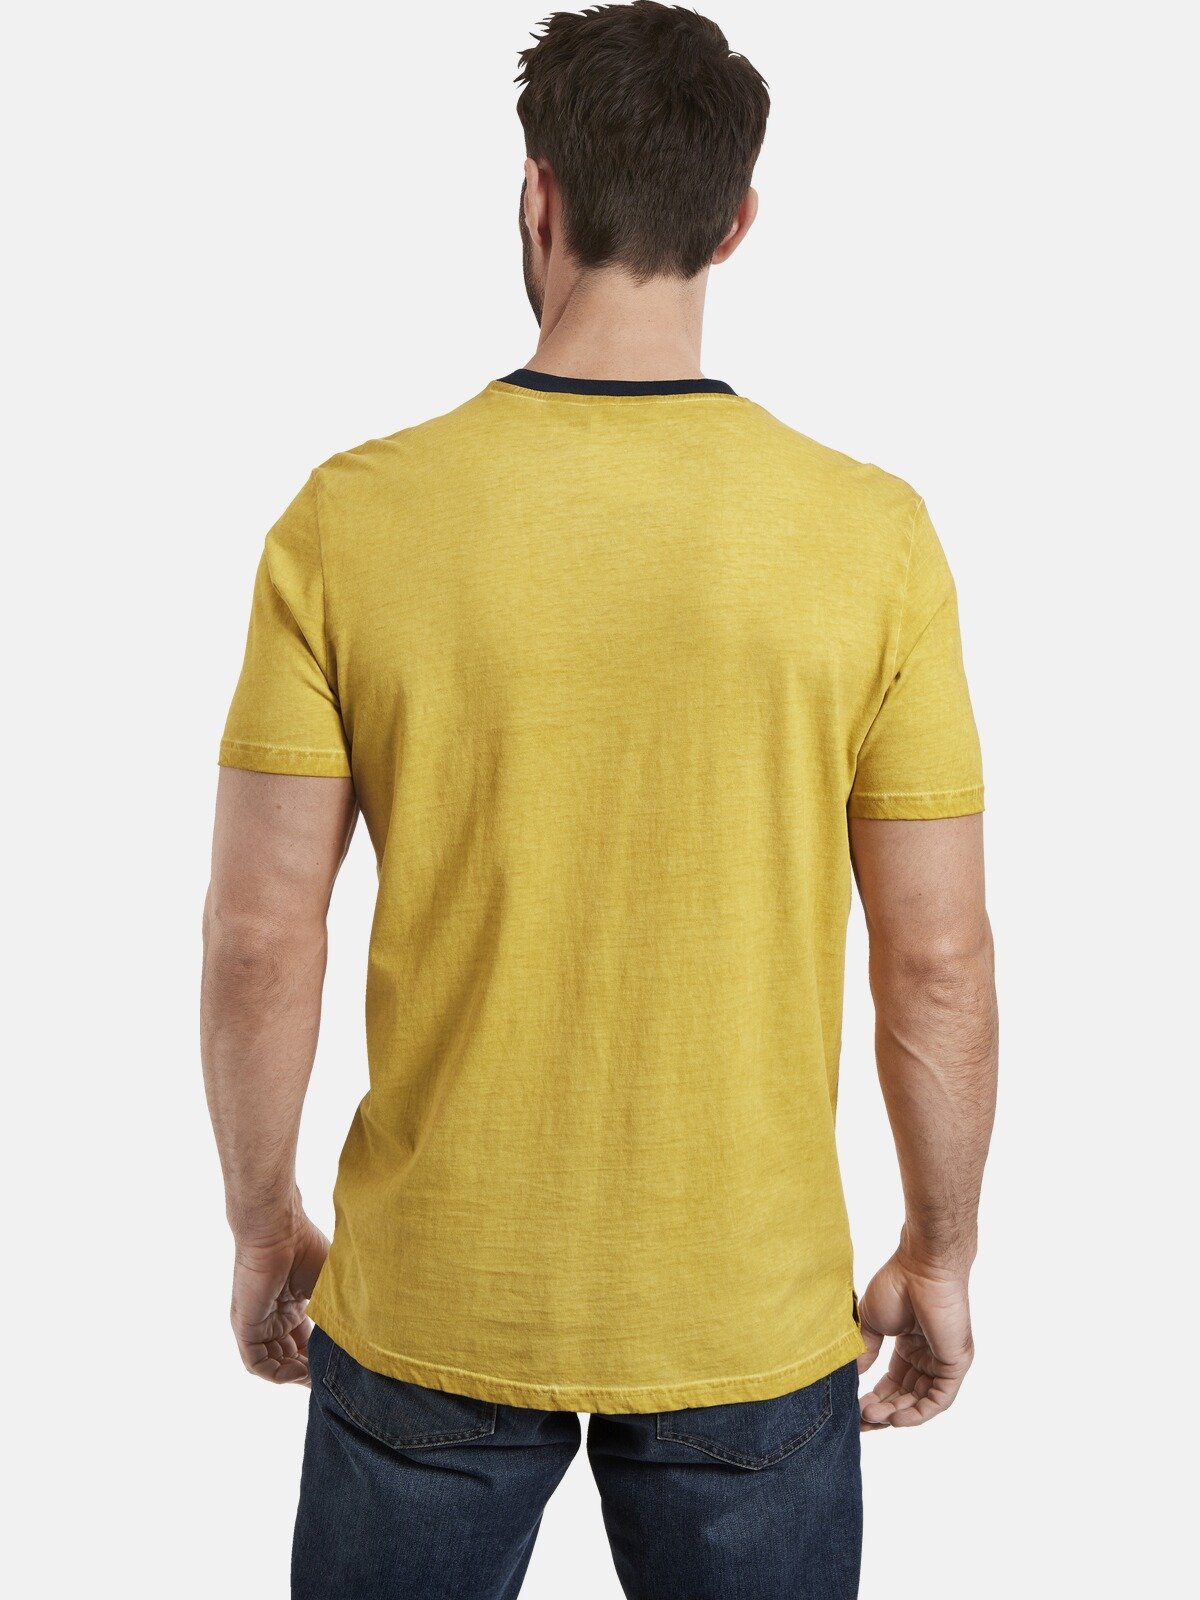 T-Shirt oil-dyed durch gelb EELI Unikat Jan Vanderstorm Färbung